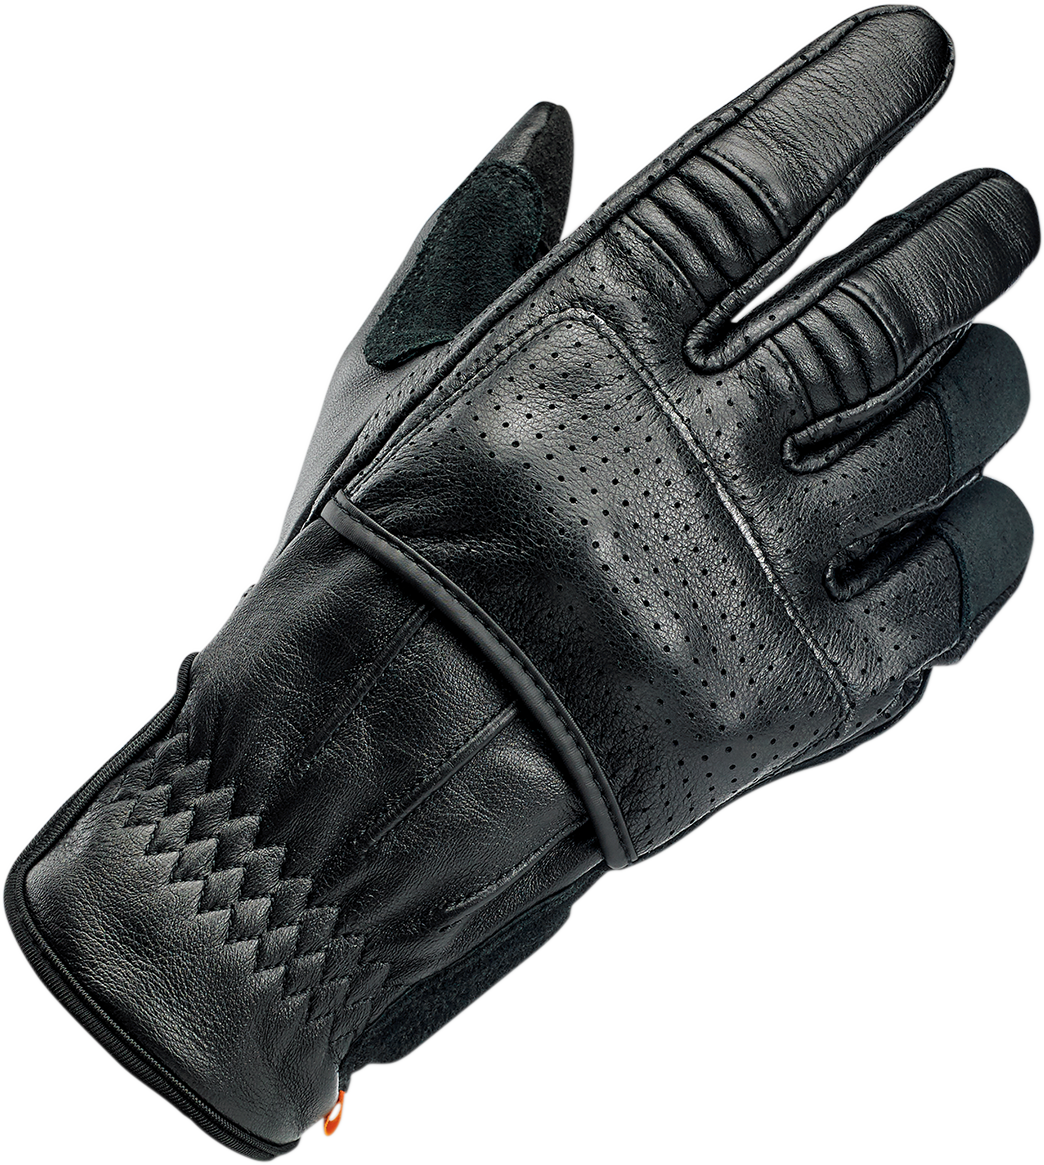 BILTWELL Borrego Gloves - Black - Large 1506-0101-304